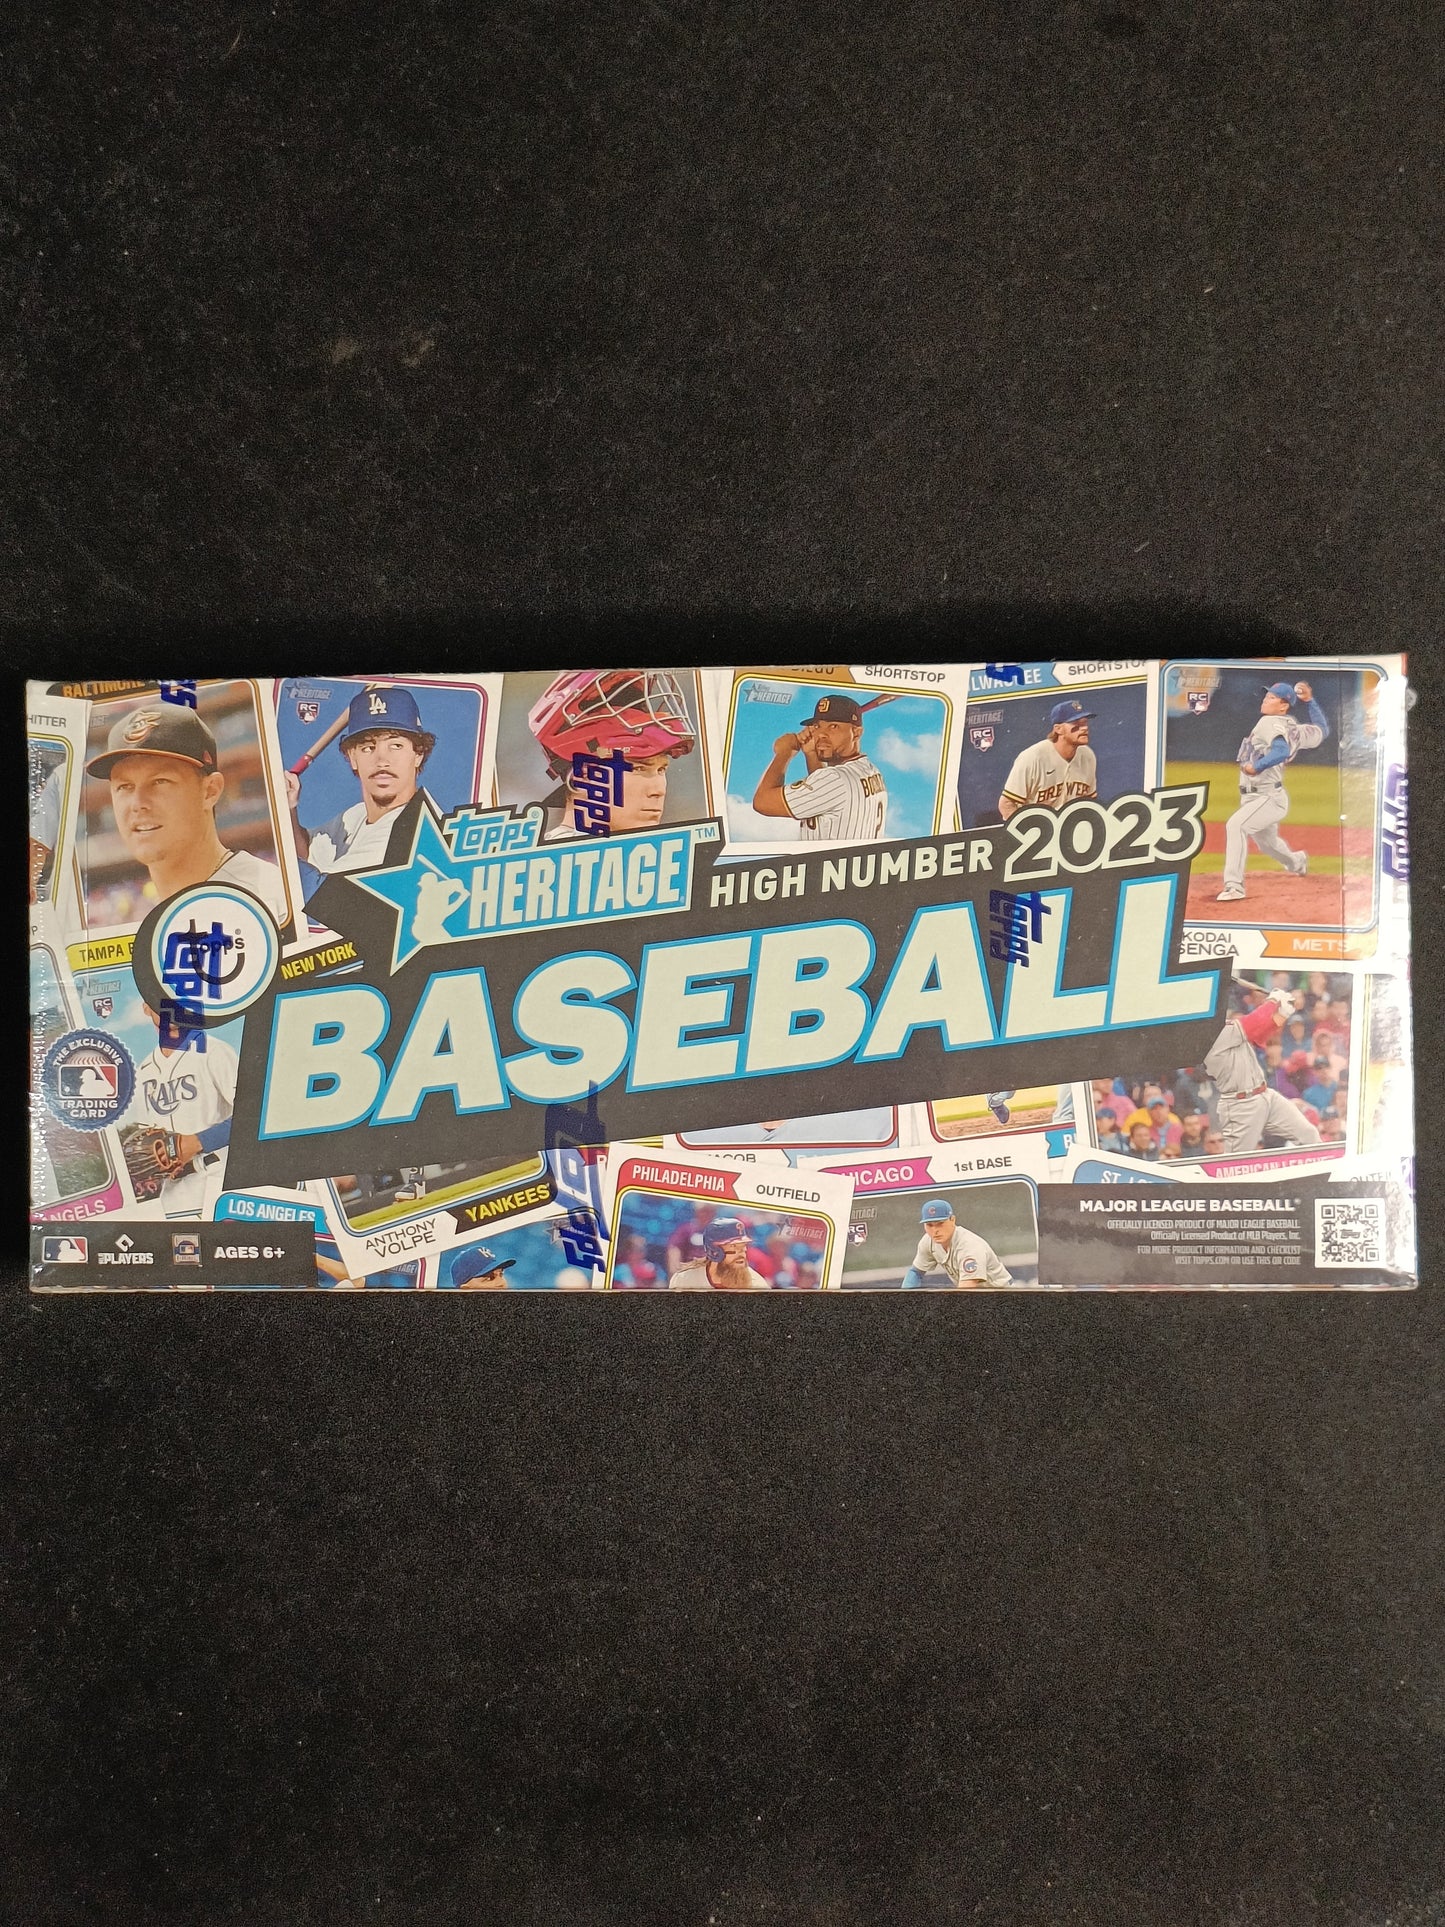 2023 Topps Heritage High Number Baseball Hobby Box - 1 Hit